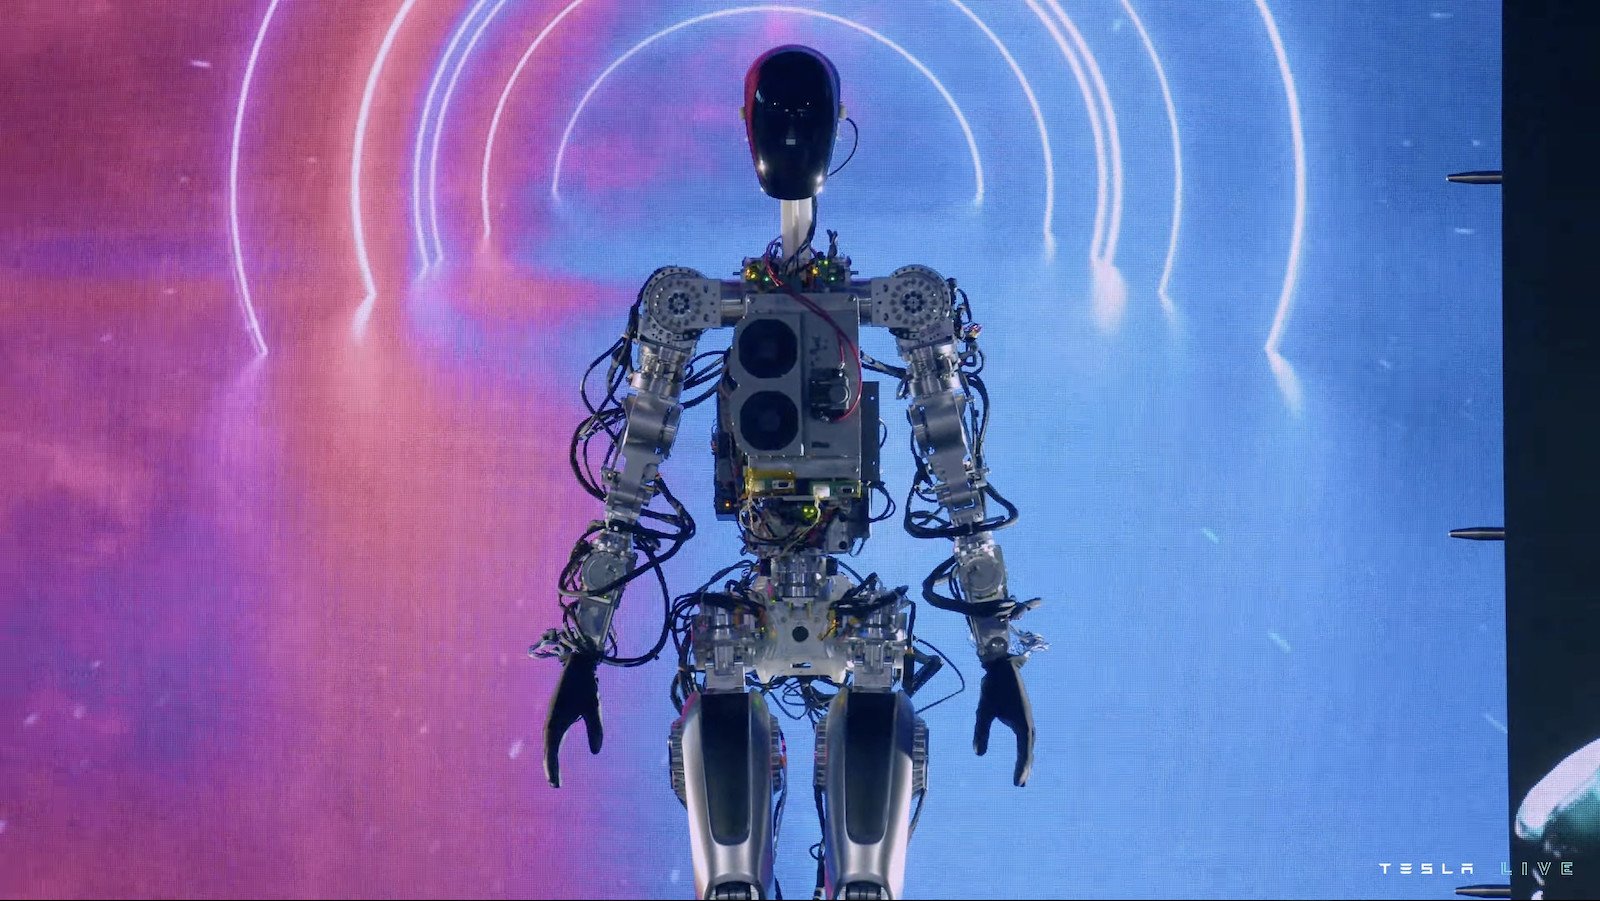 Περισσότερες πληροφορίες για "Η Tesla παρουσιάζει ένα απογοητευτικό πρωτότυπο ανθρωπόμορφου ρομπότ στην AI Day"